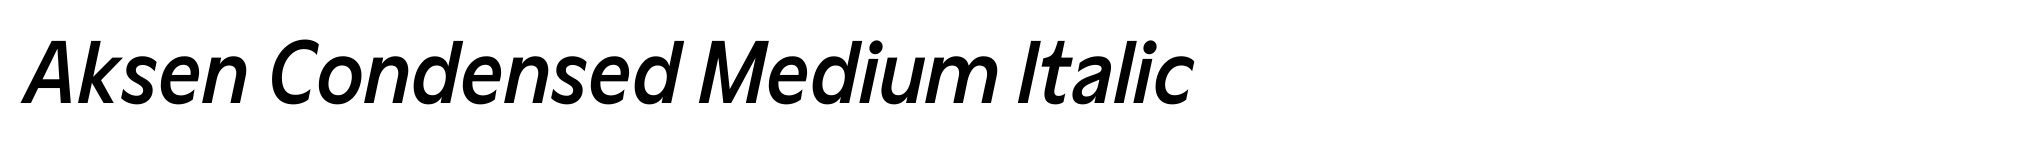 Aksen Condensed Medium Italic image